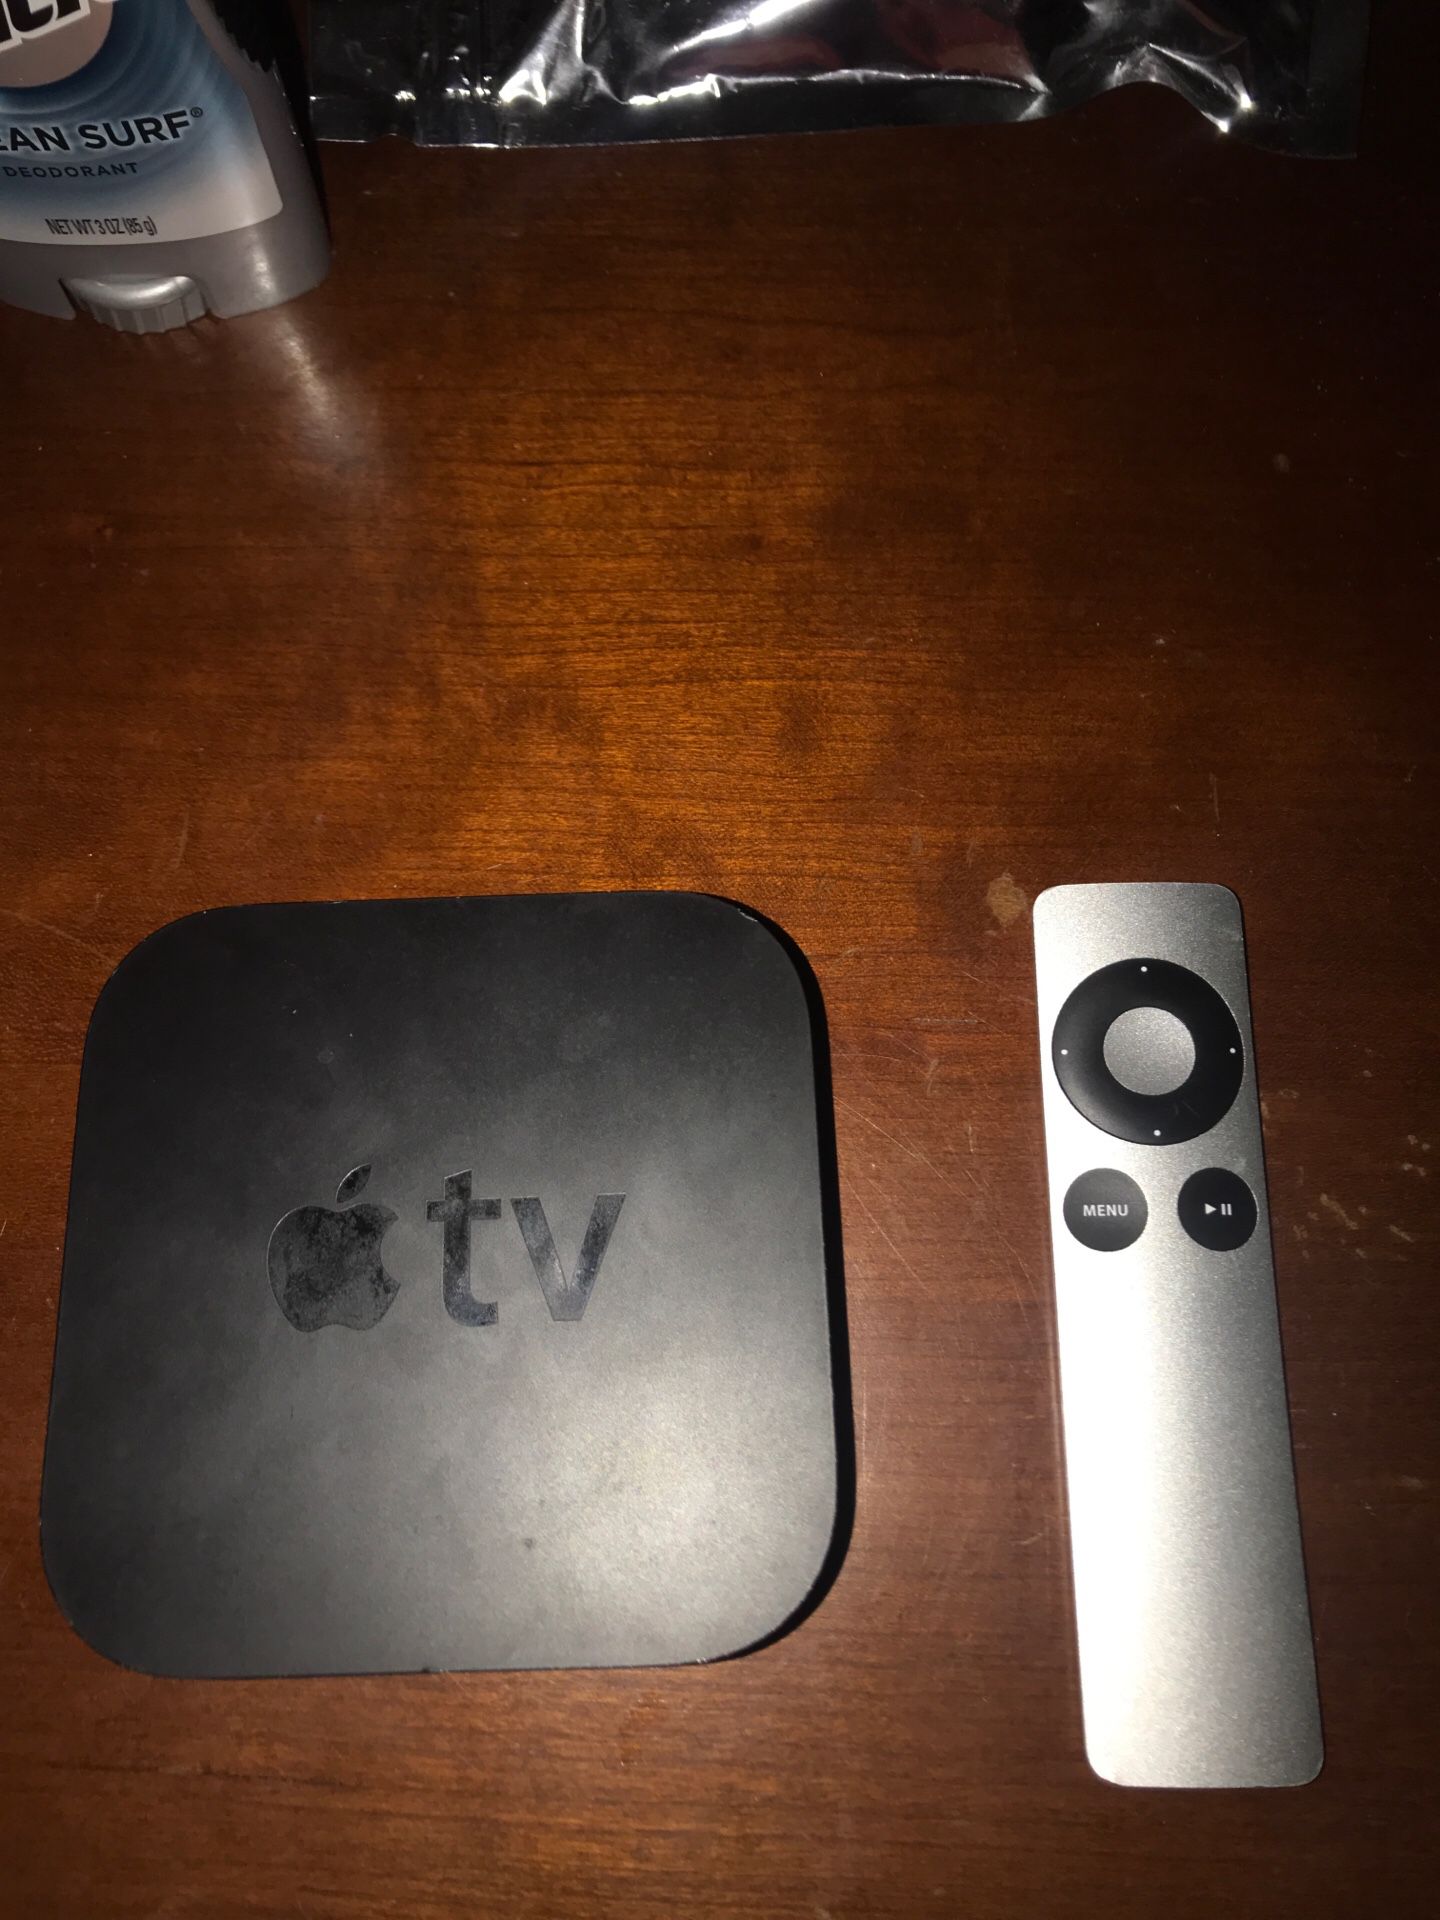 Apple TV 4K resolution (3rd generation)